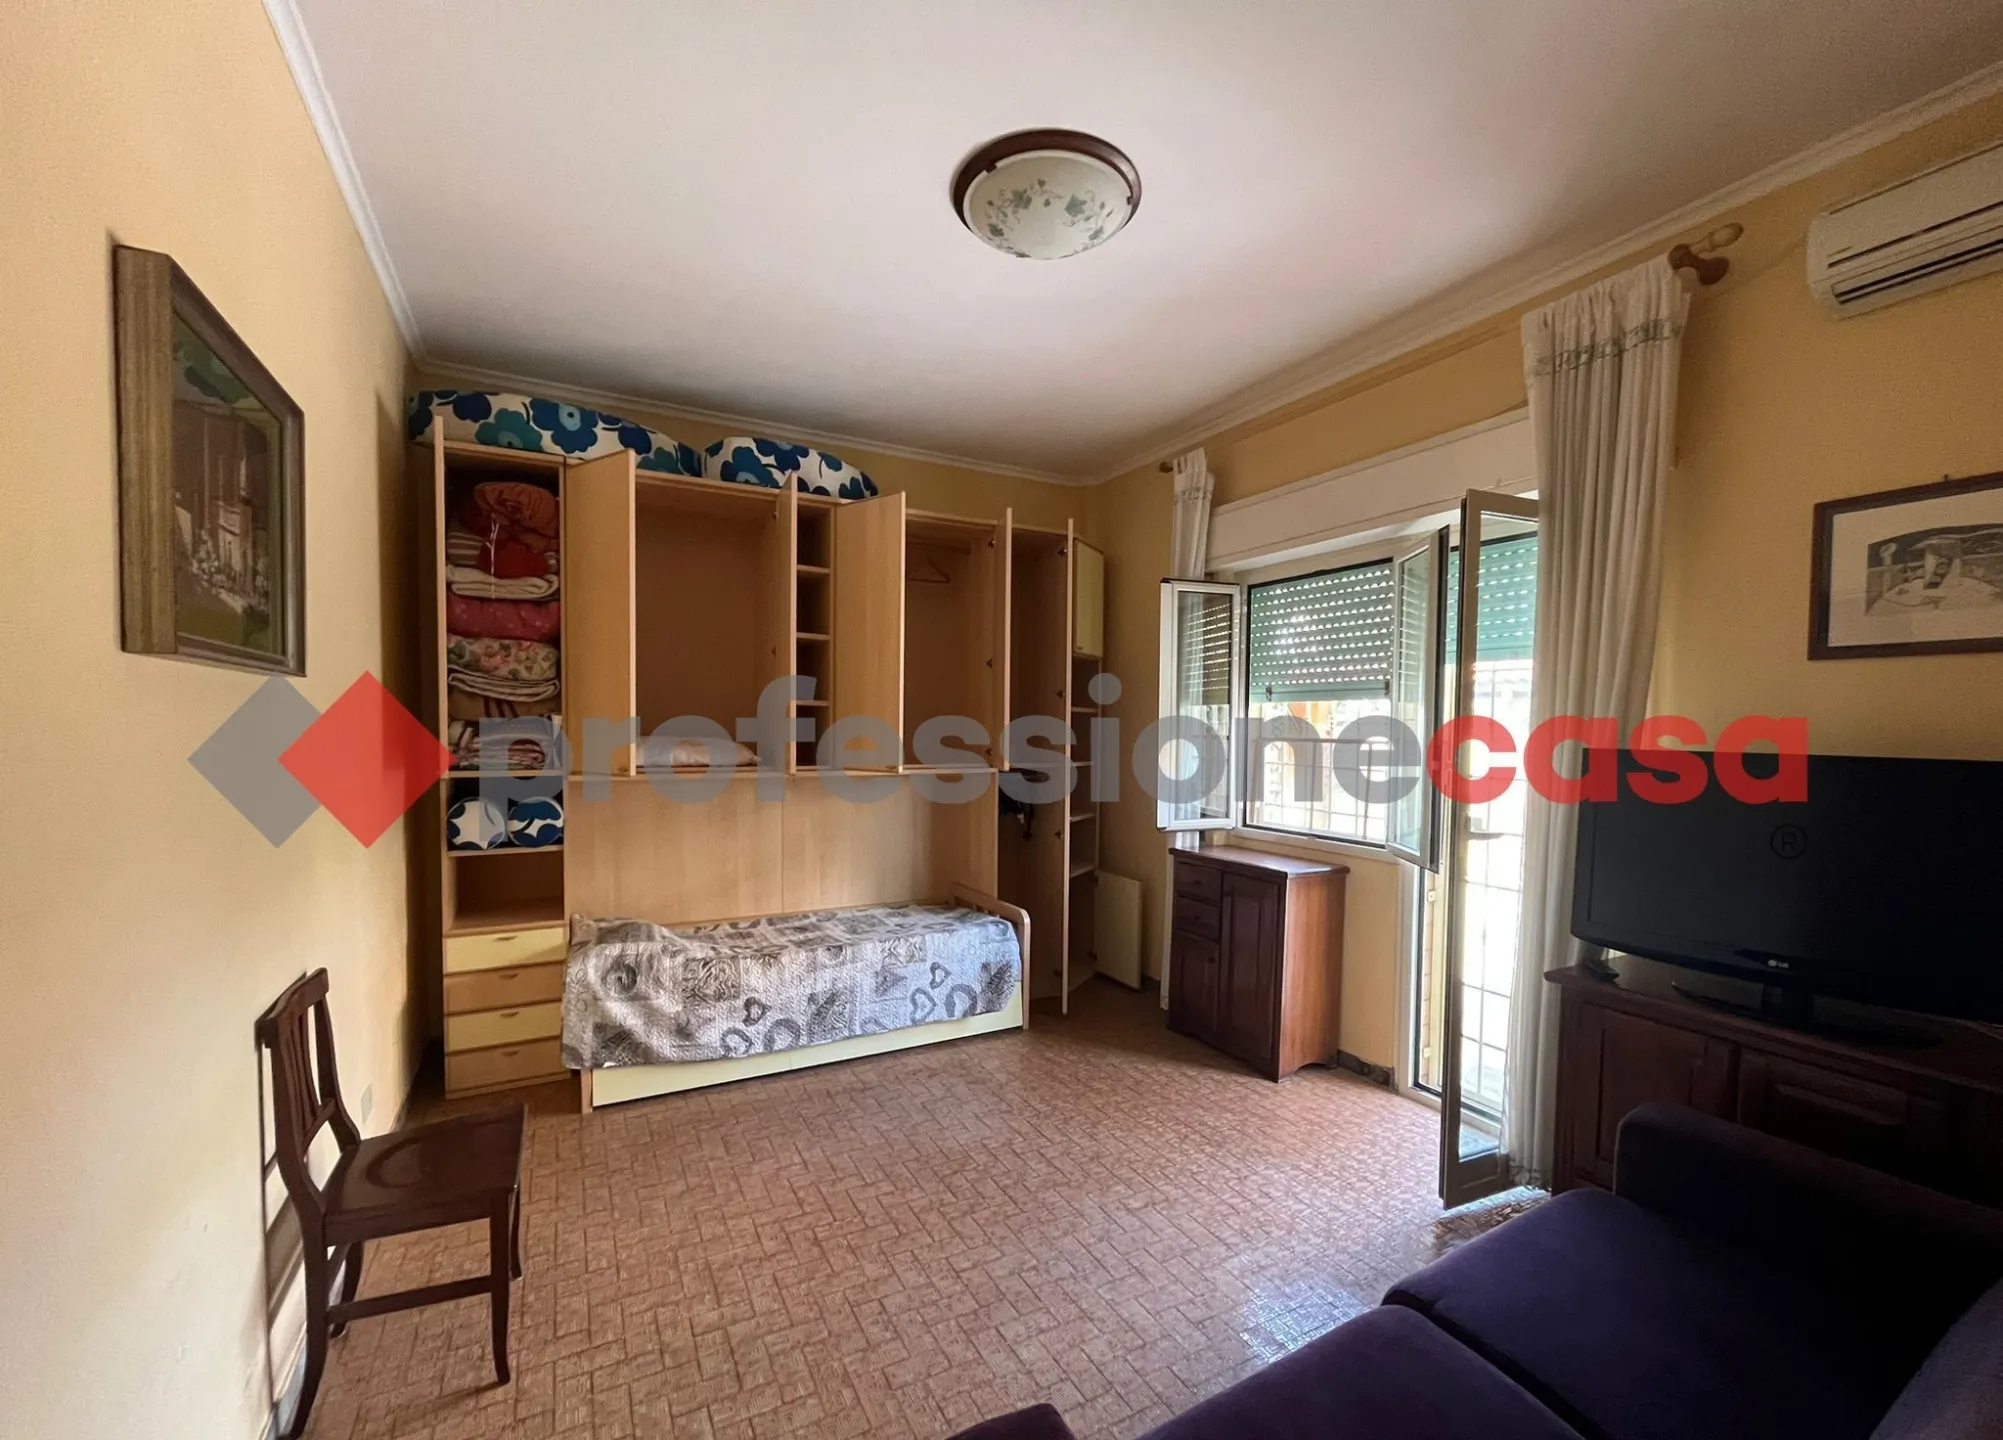 Immagine per Appartamento in vendita a Pomezia via Rumenia 115